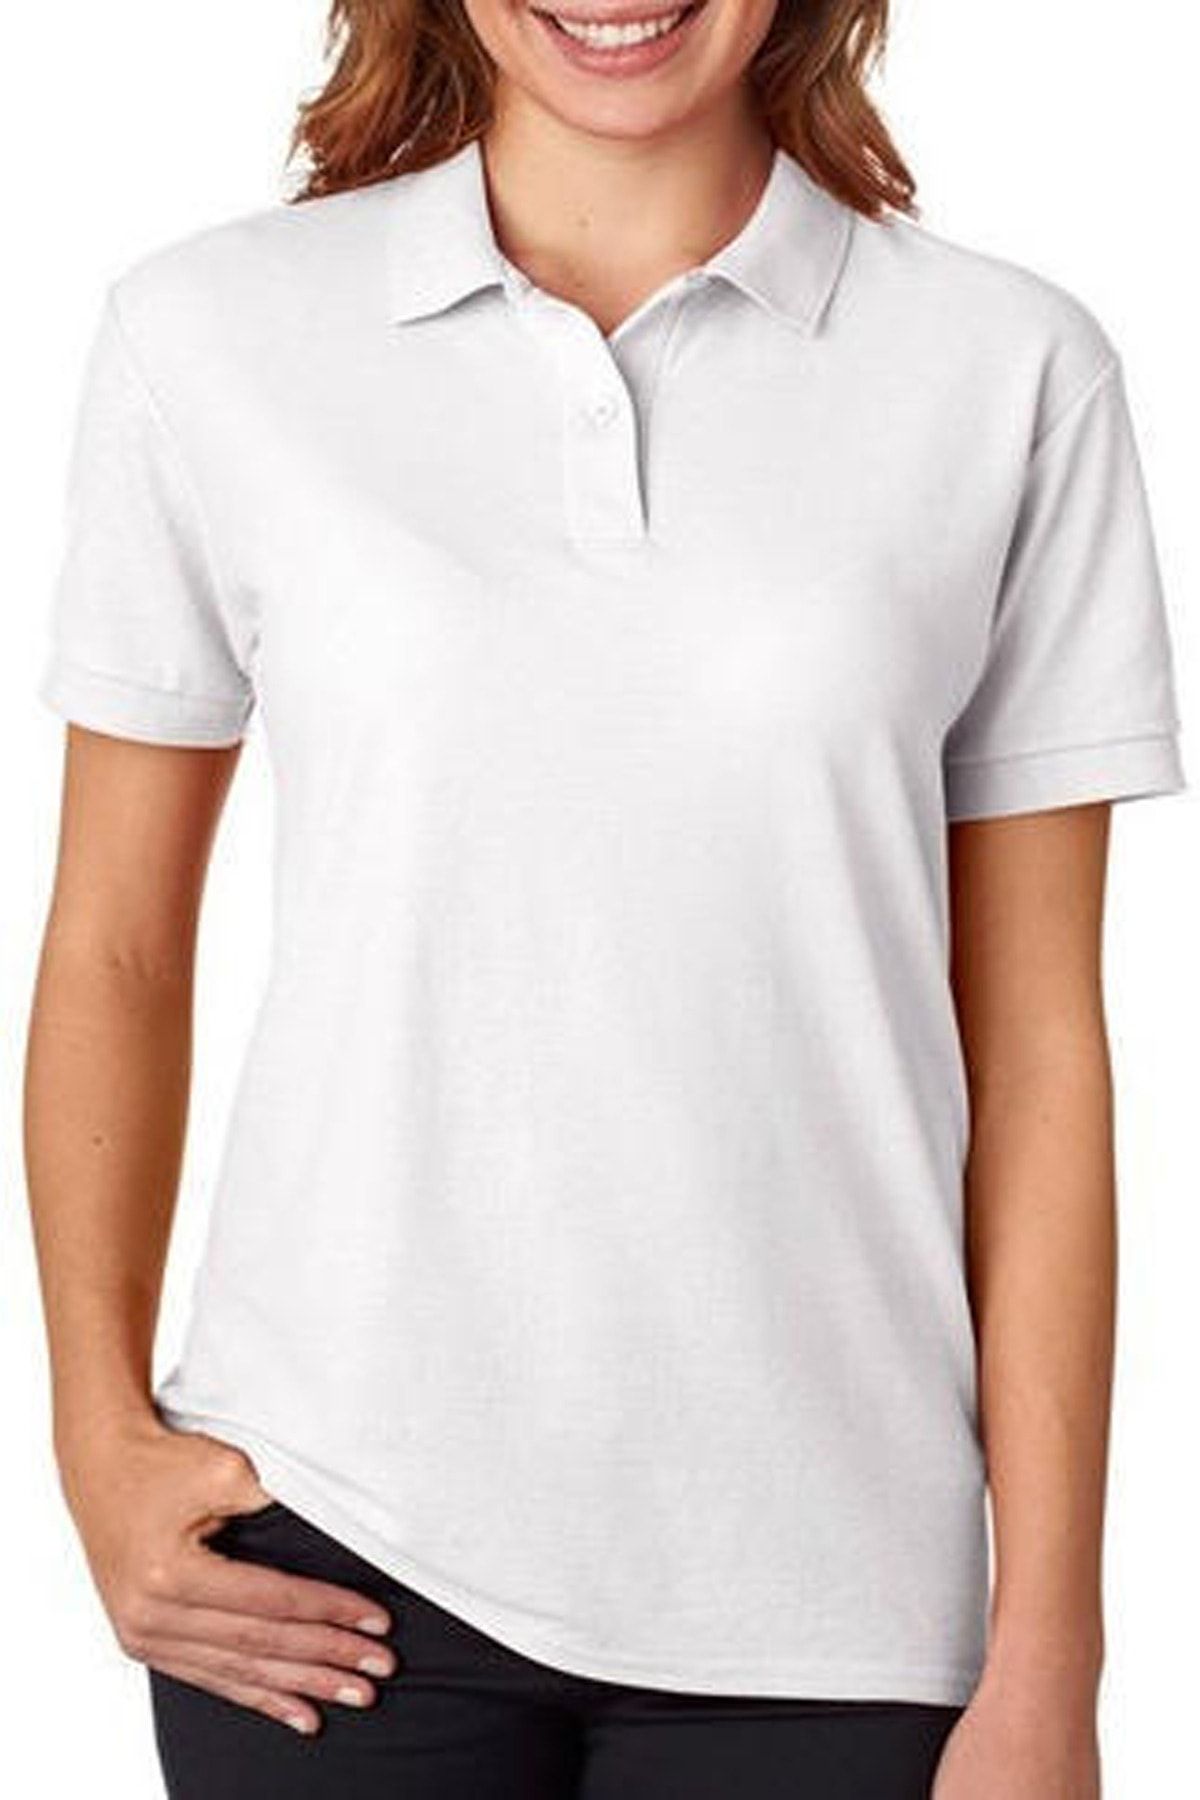 CKM Mağazacılık Polo Yaka Elit Örme Lakost T-shirt